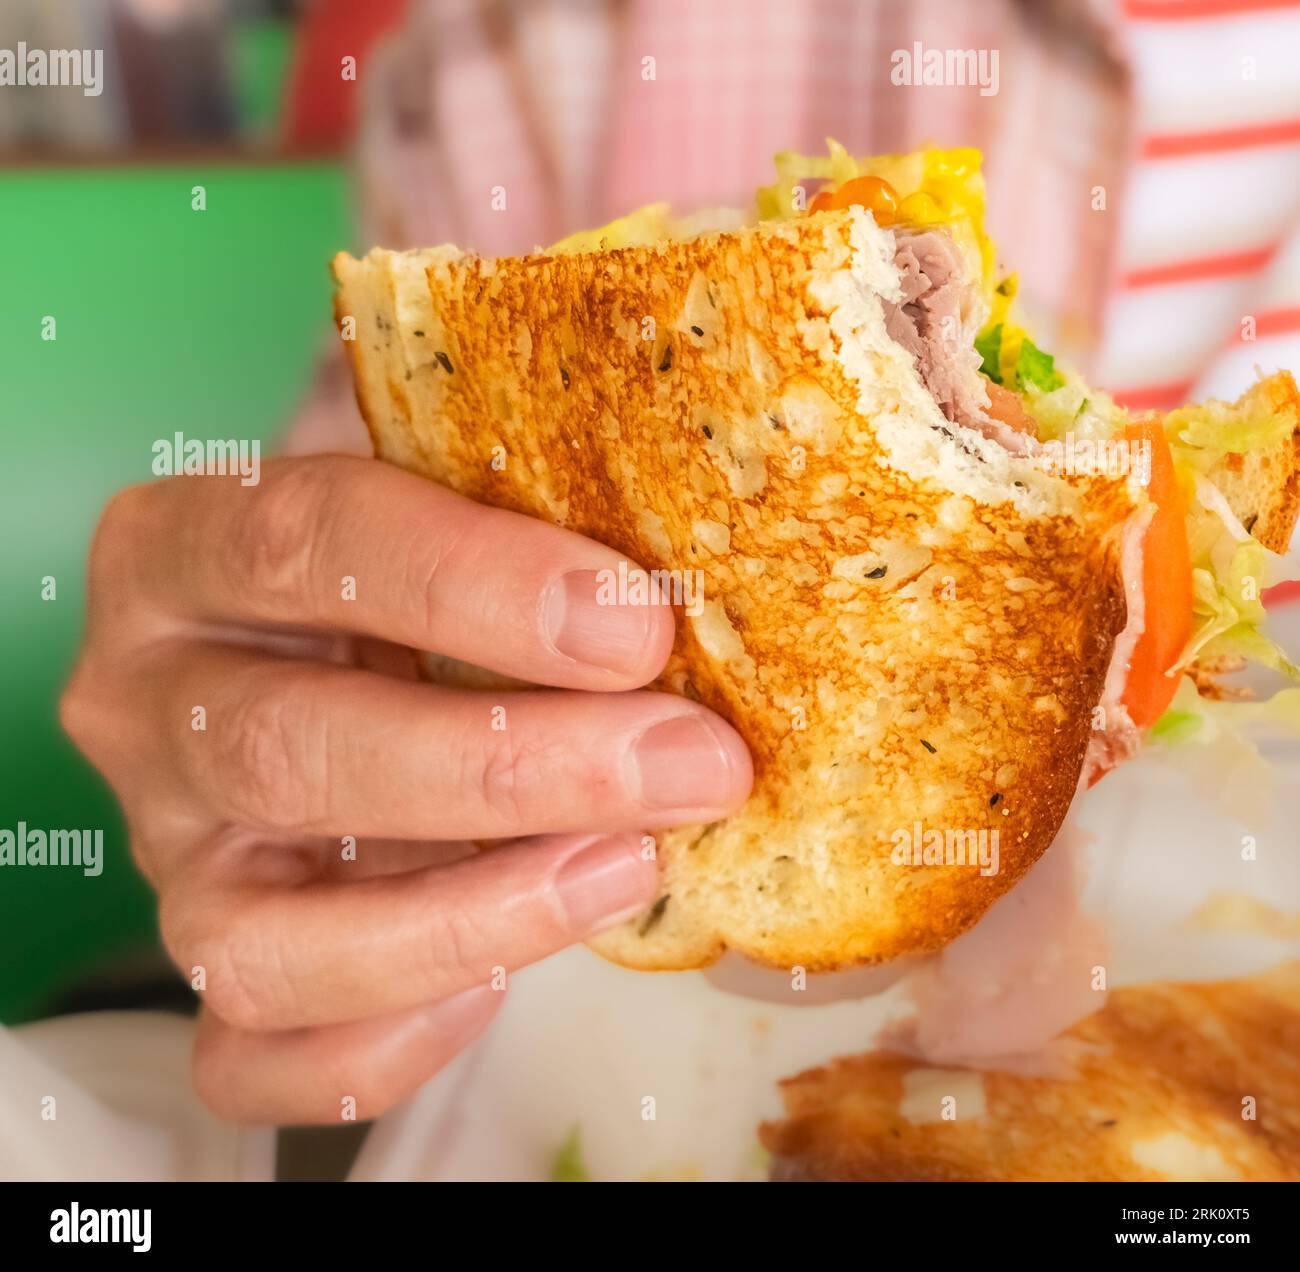 Frau mit leckerem Rindfleisch-Sandwich in der Hand. Frau, die Burger-Sandwich isst. Fastfood-Konzept. Person, die leckeres gegrilltes Sandwich mit Gemüse hält. Fe Stockfoto